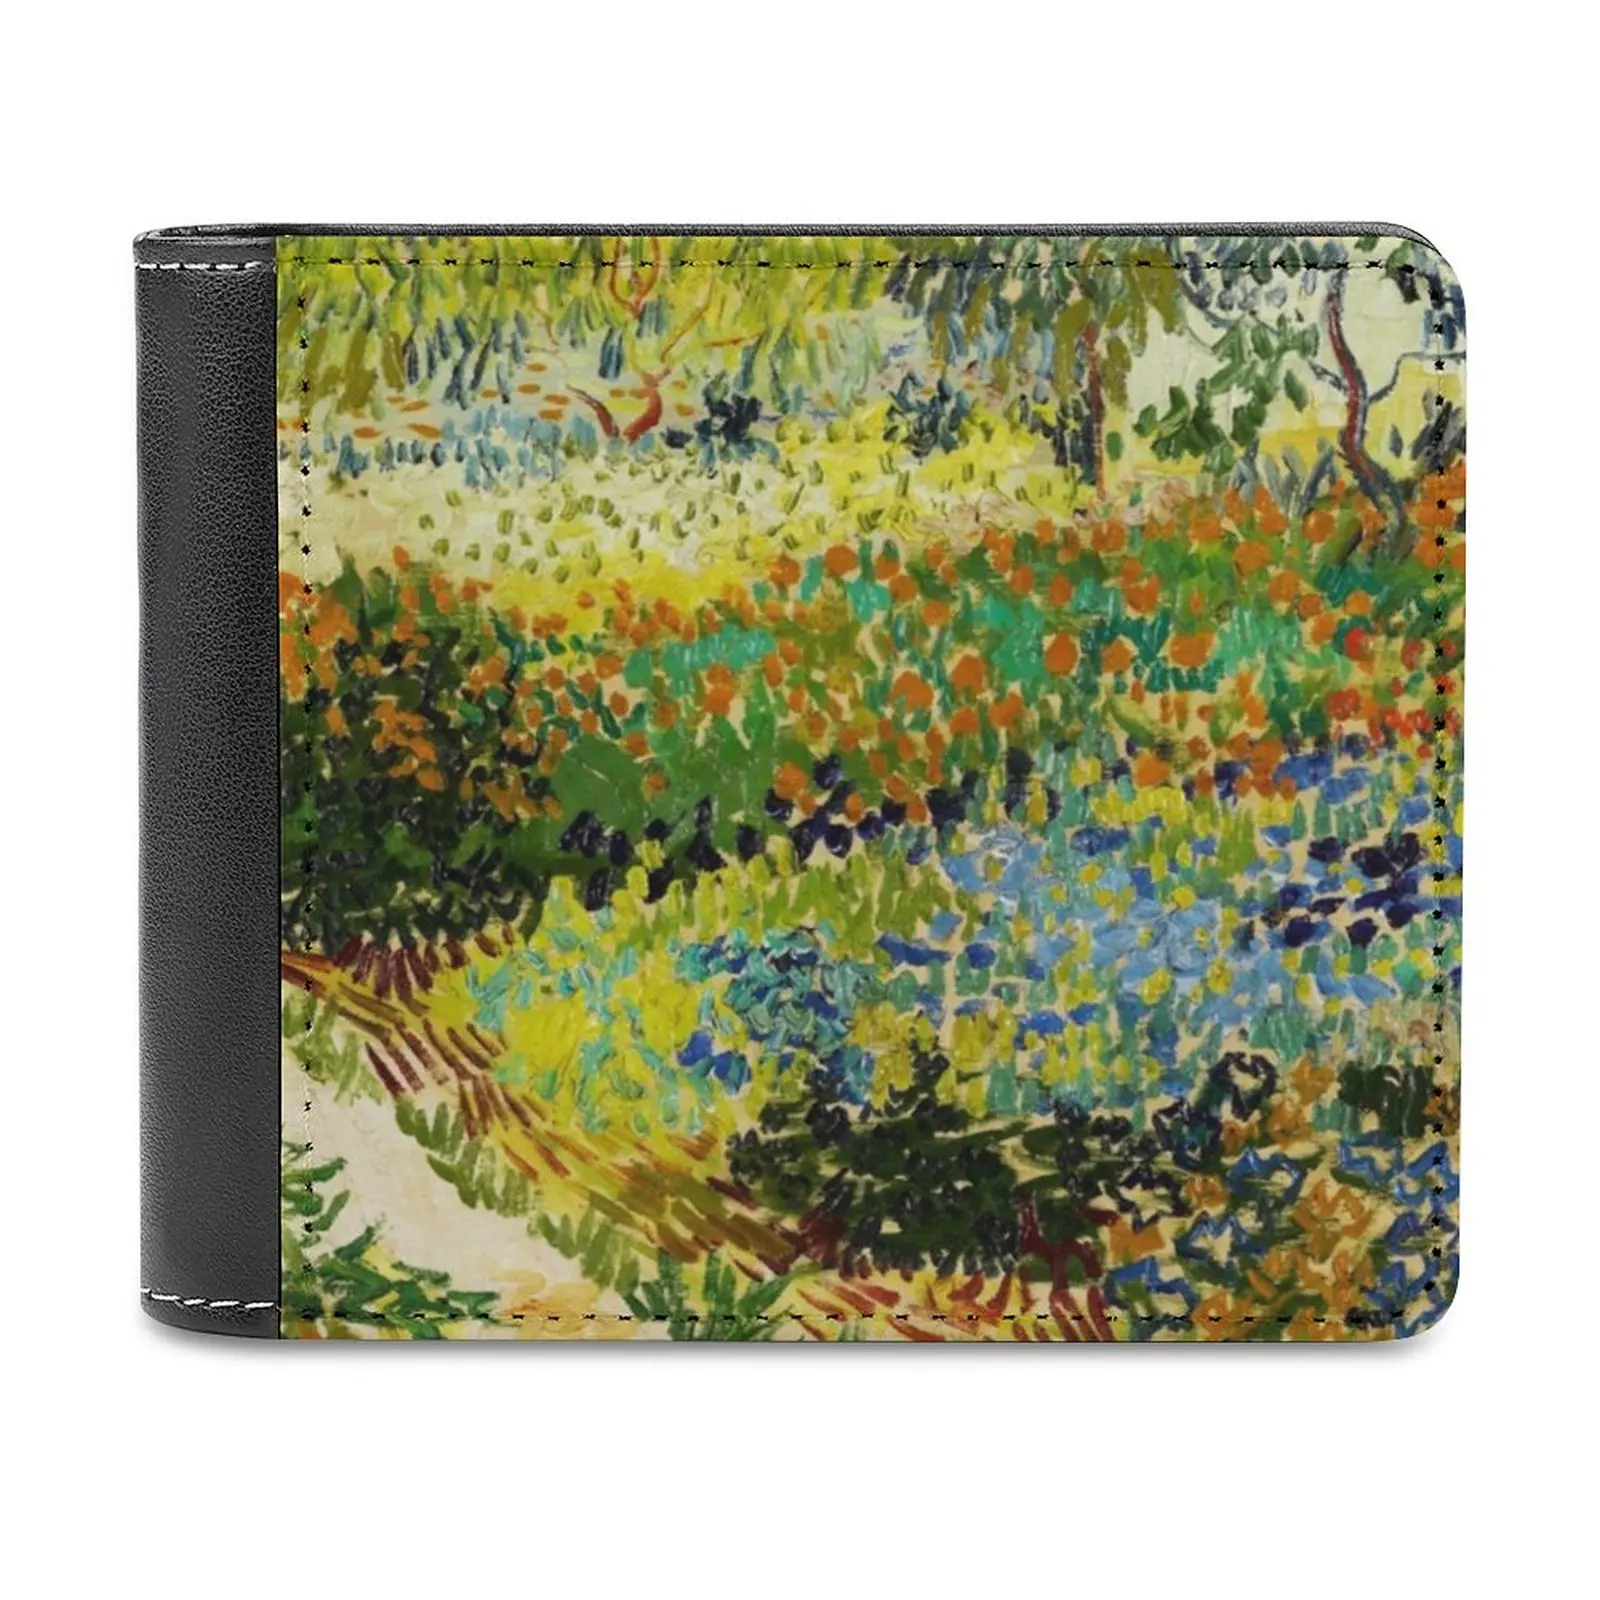 

Мягкие мужские кошельки Van Gogh-Garden At Arles, новый кошелек, держатели для кредитных карт, мужские кошельки, мужской кошелек, кошелек Ван Гог арлес сад At